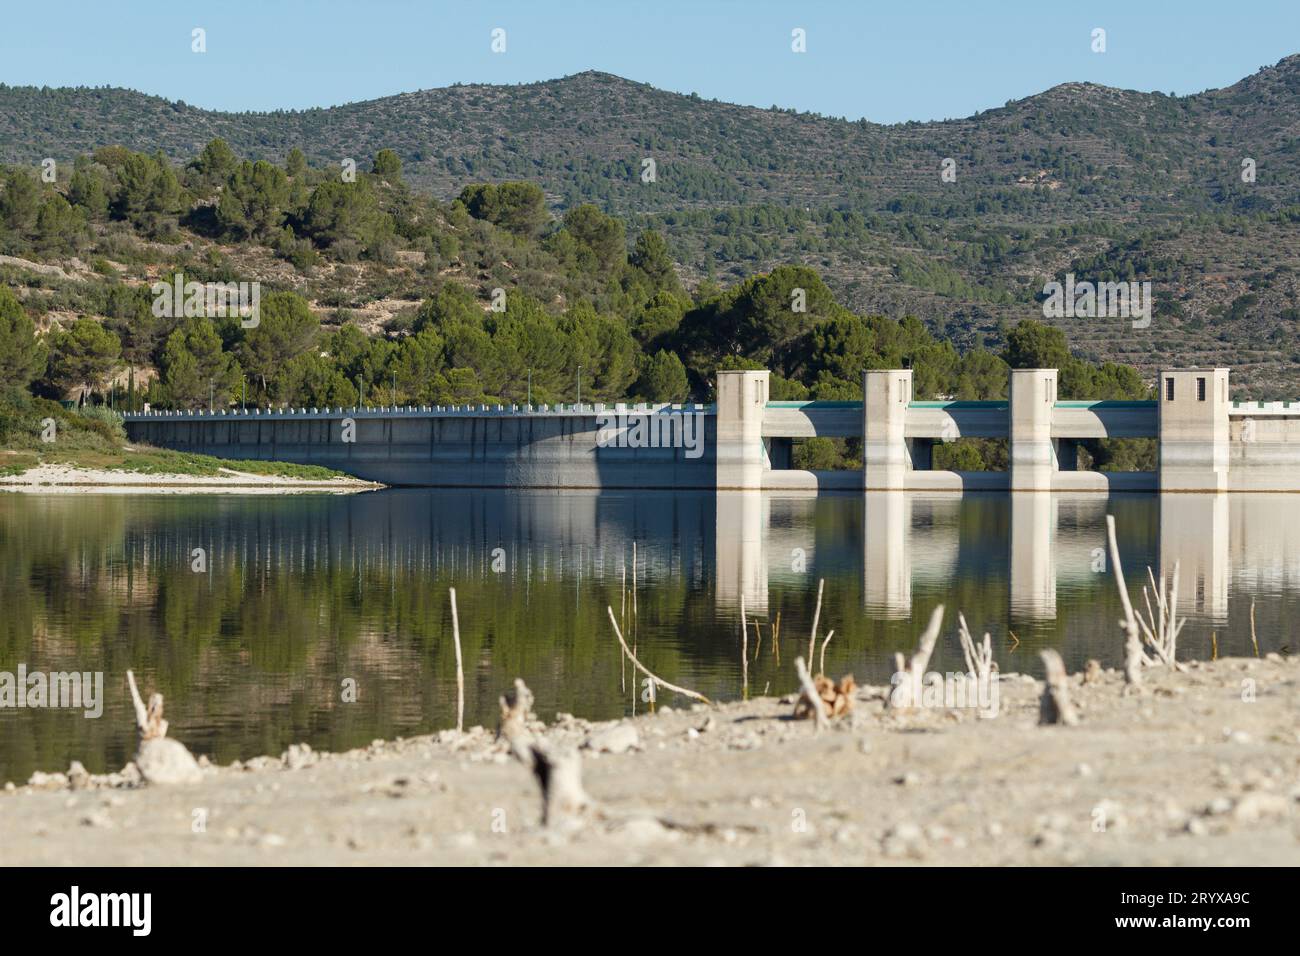 Mur de soutènement du réservoir de Beniarrs avec les portes ouvertes et le niveau d'eau bas dans le lac en raison du changement climatique, Espagne Banque D'Images